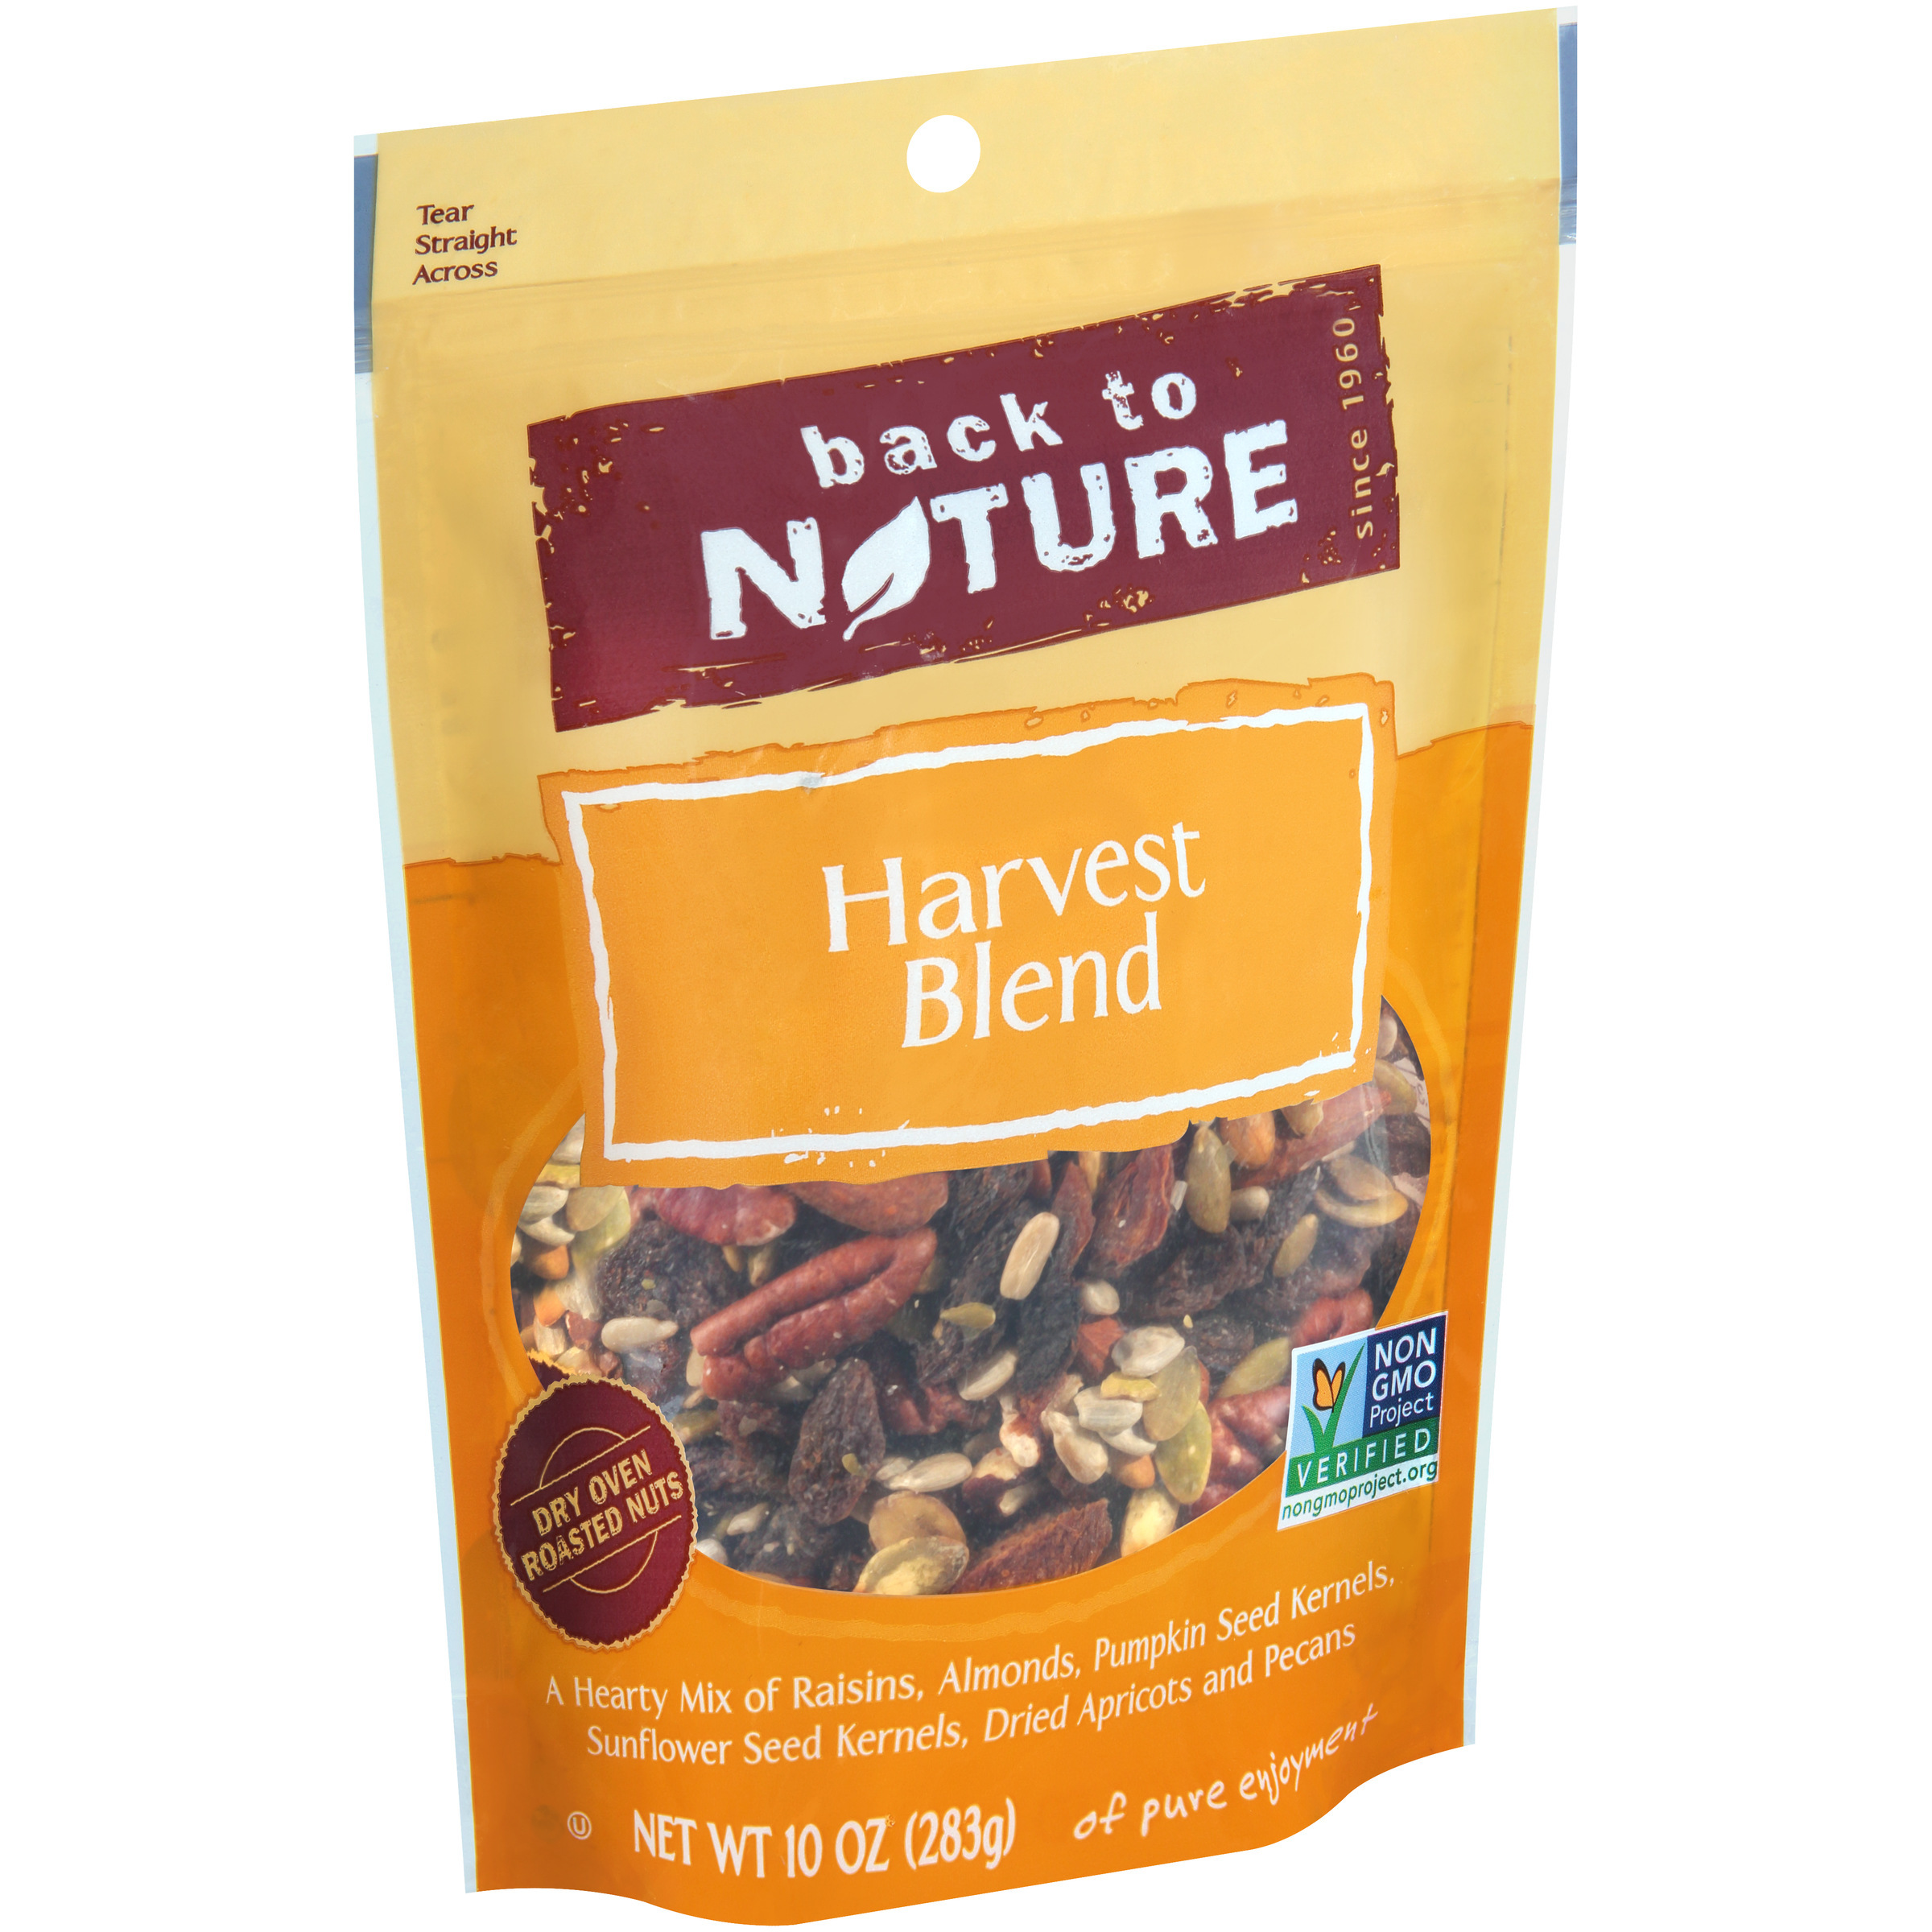 Back to Nature Harvest Blend Trail Mix 10 oz. Bag - image 3 of 12